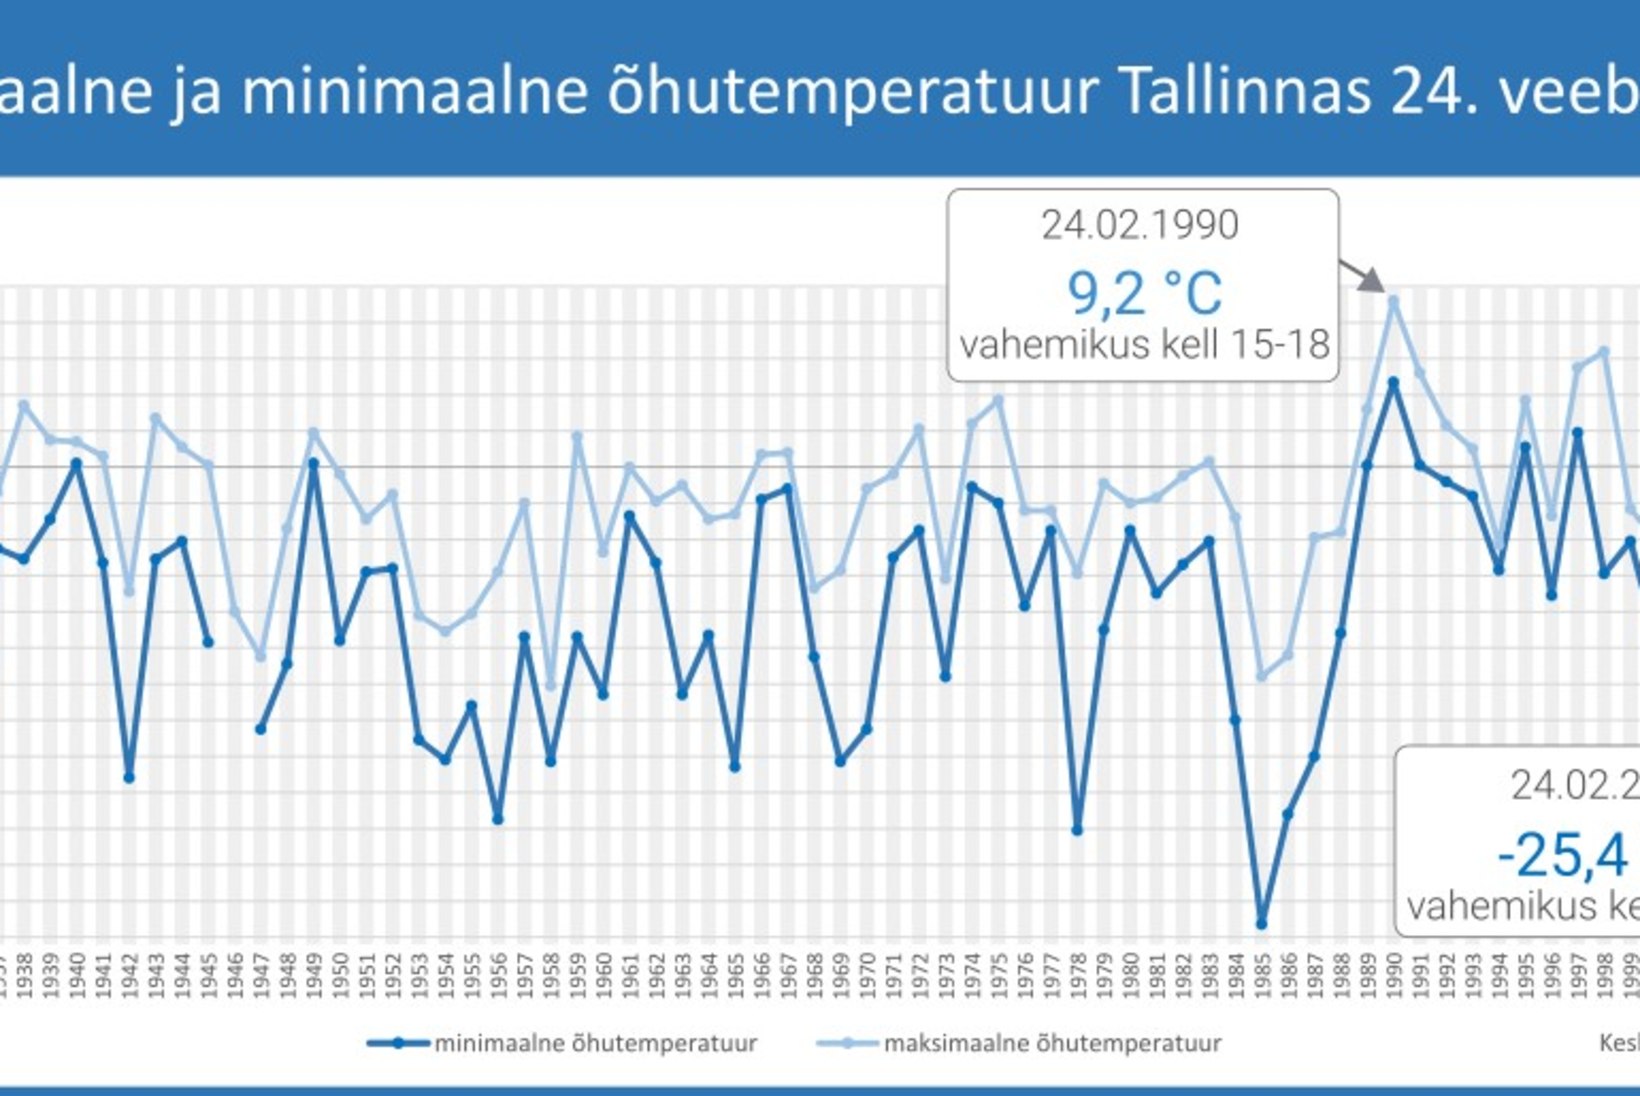 VAATA GRAAFIKUT! Eesti vabariigi soojemad ja külmemad vastuvõtud läbi aastate